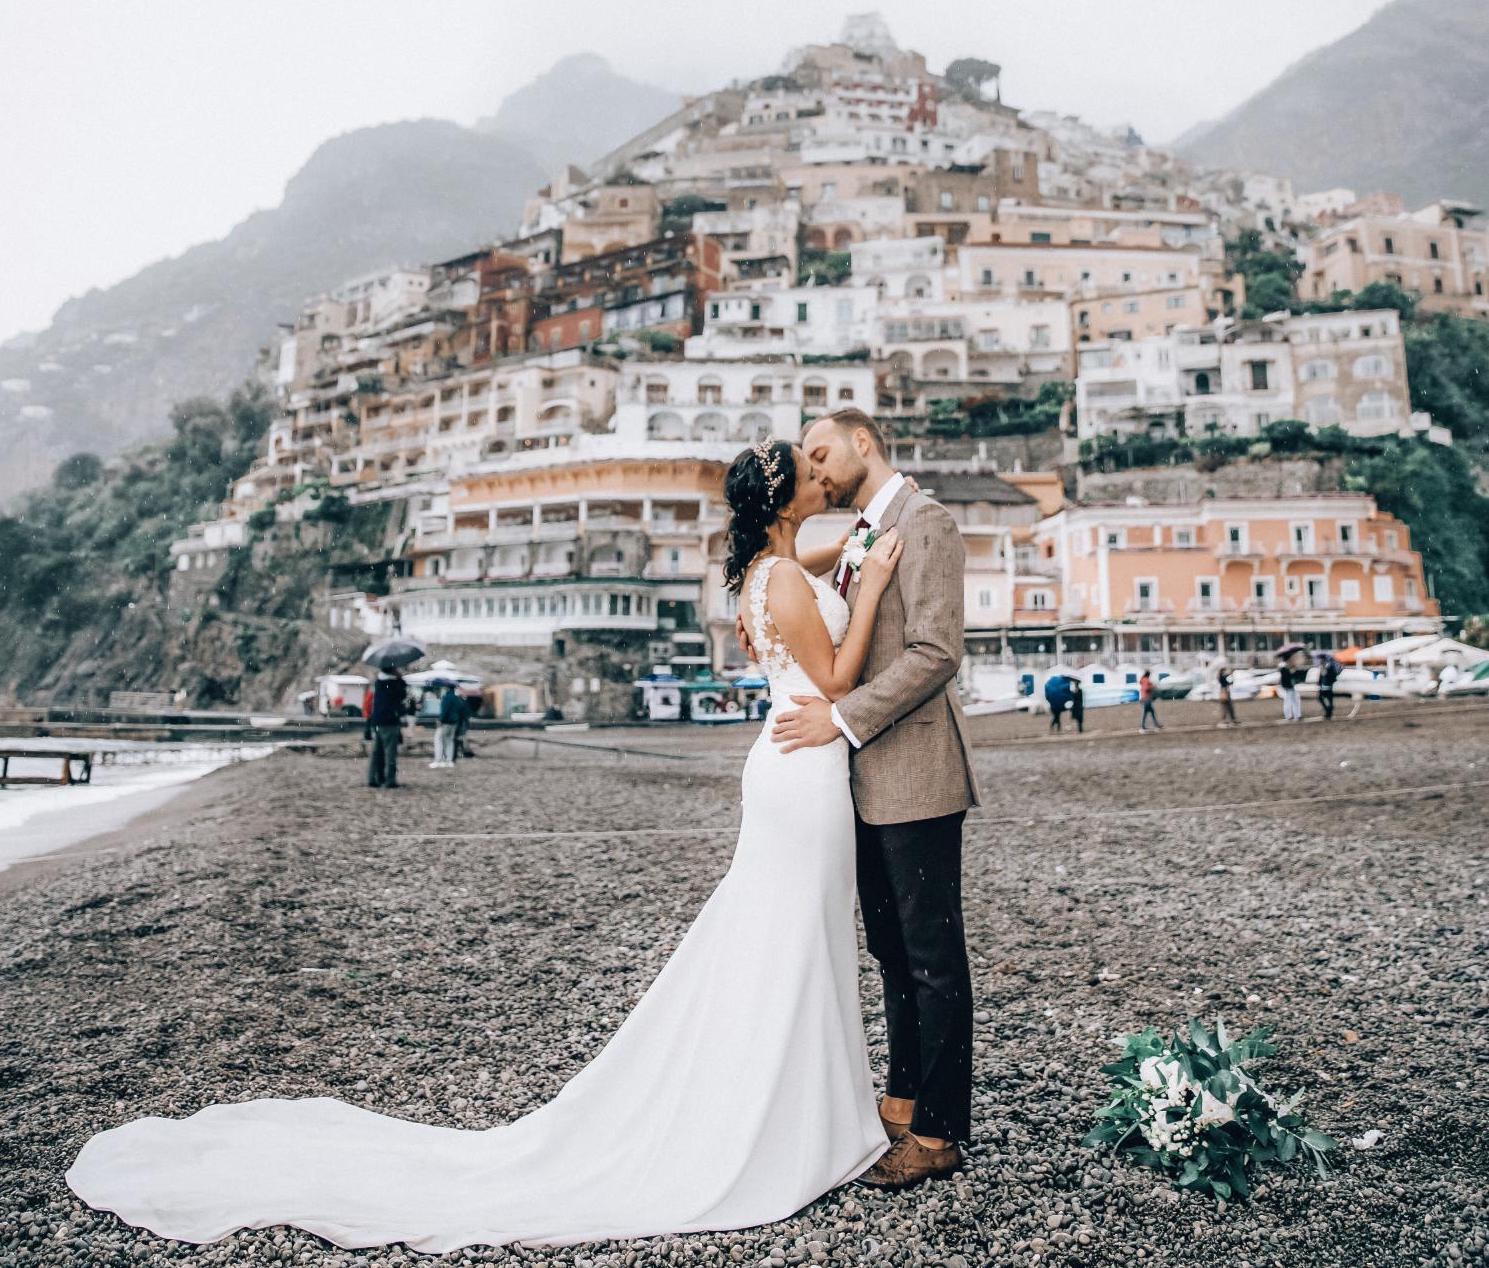 Wasze śluby — potajemny ślub we włoskim Positano! 29833